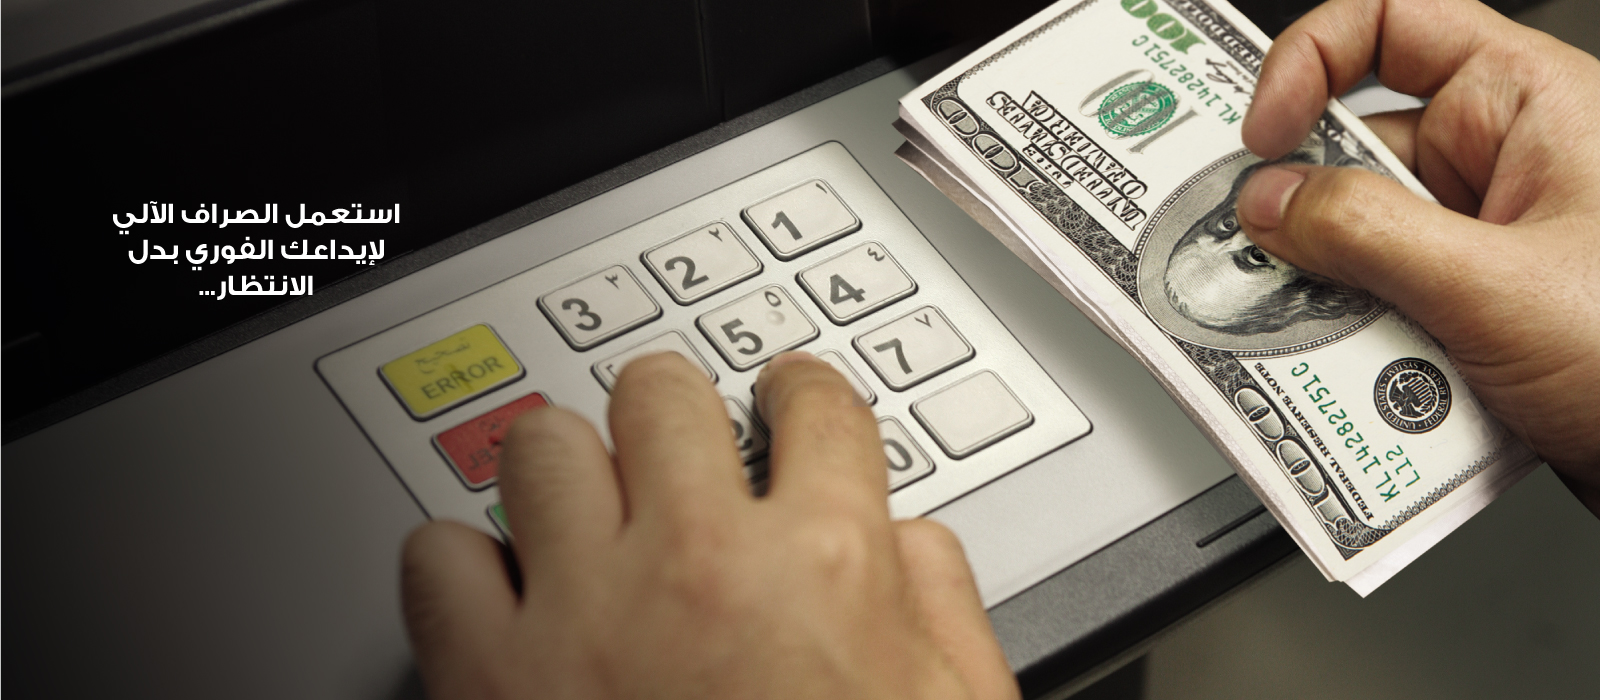 ATM-Cash-Deposit-1600x700-Lebanon-A